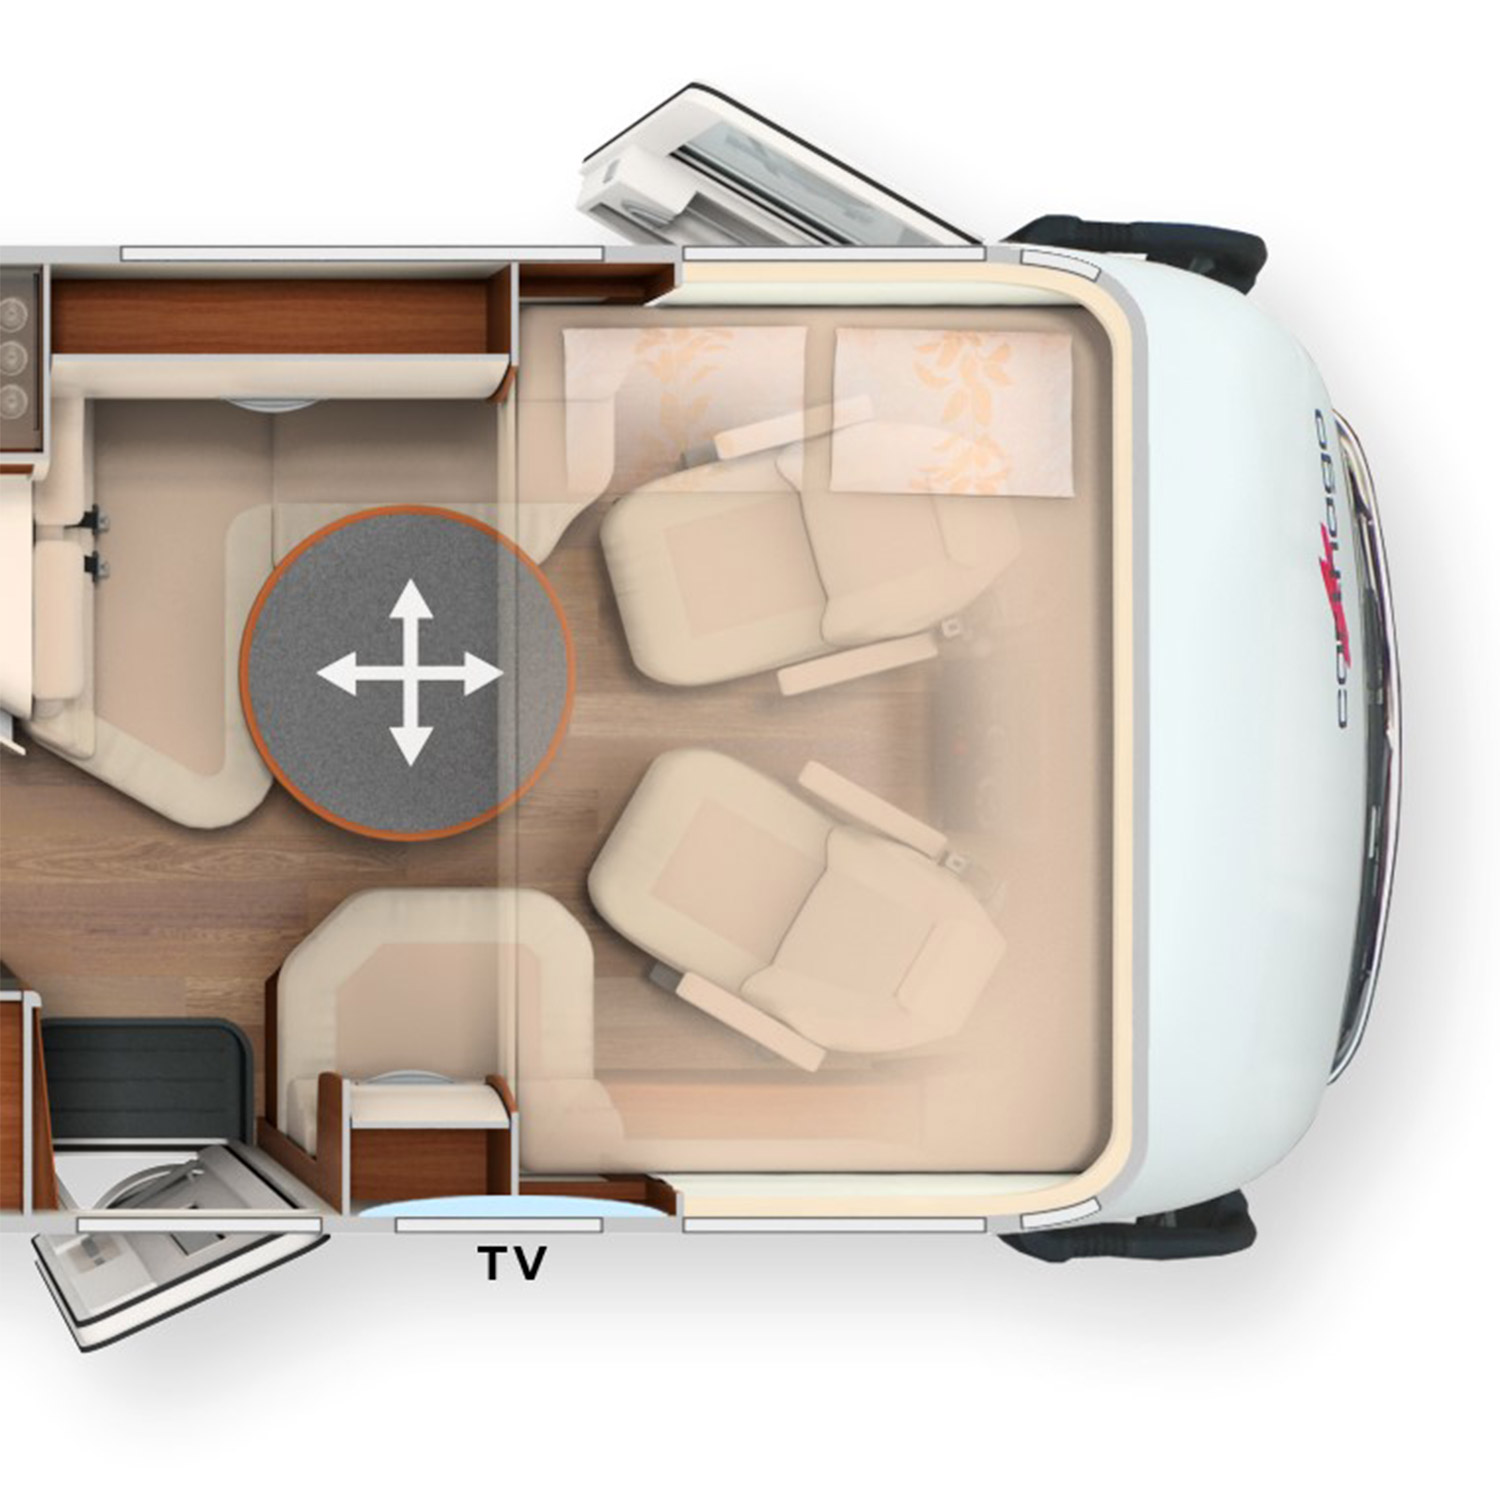 Grundriss des Wohnraums eines integrierten Wohnmobils mit der Ansicht des Hubbetts und breiter Seitensitzbank